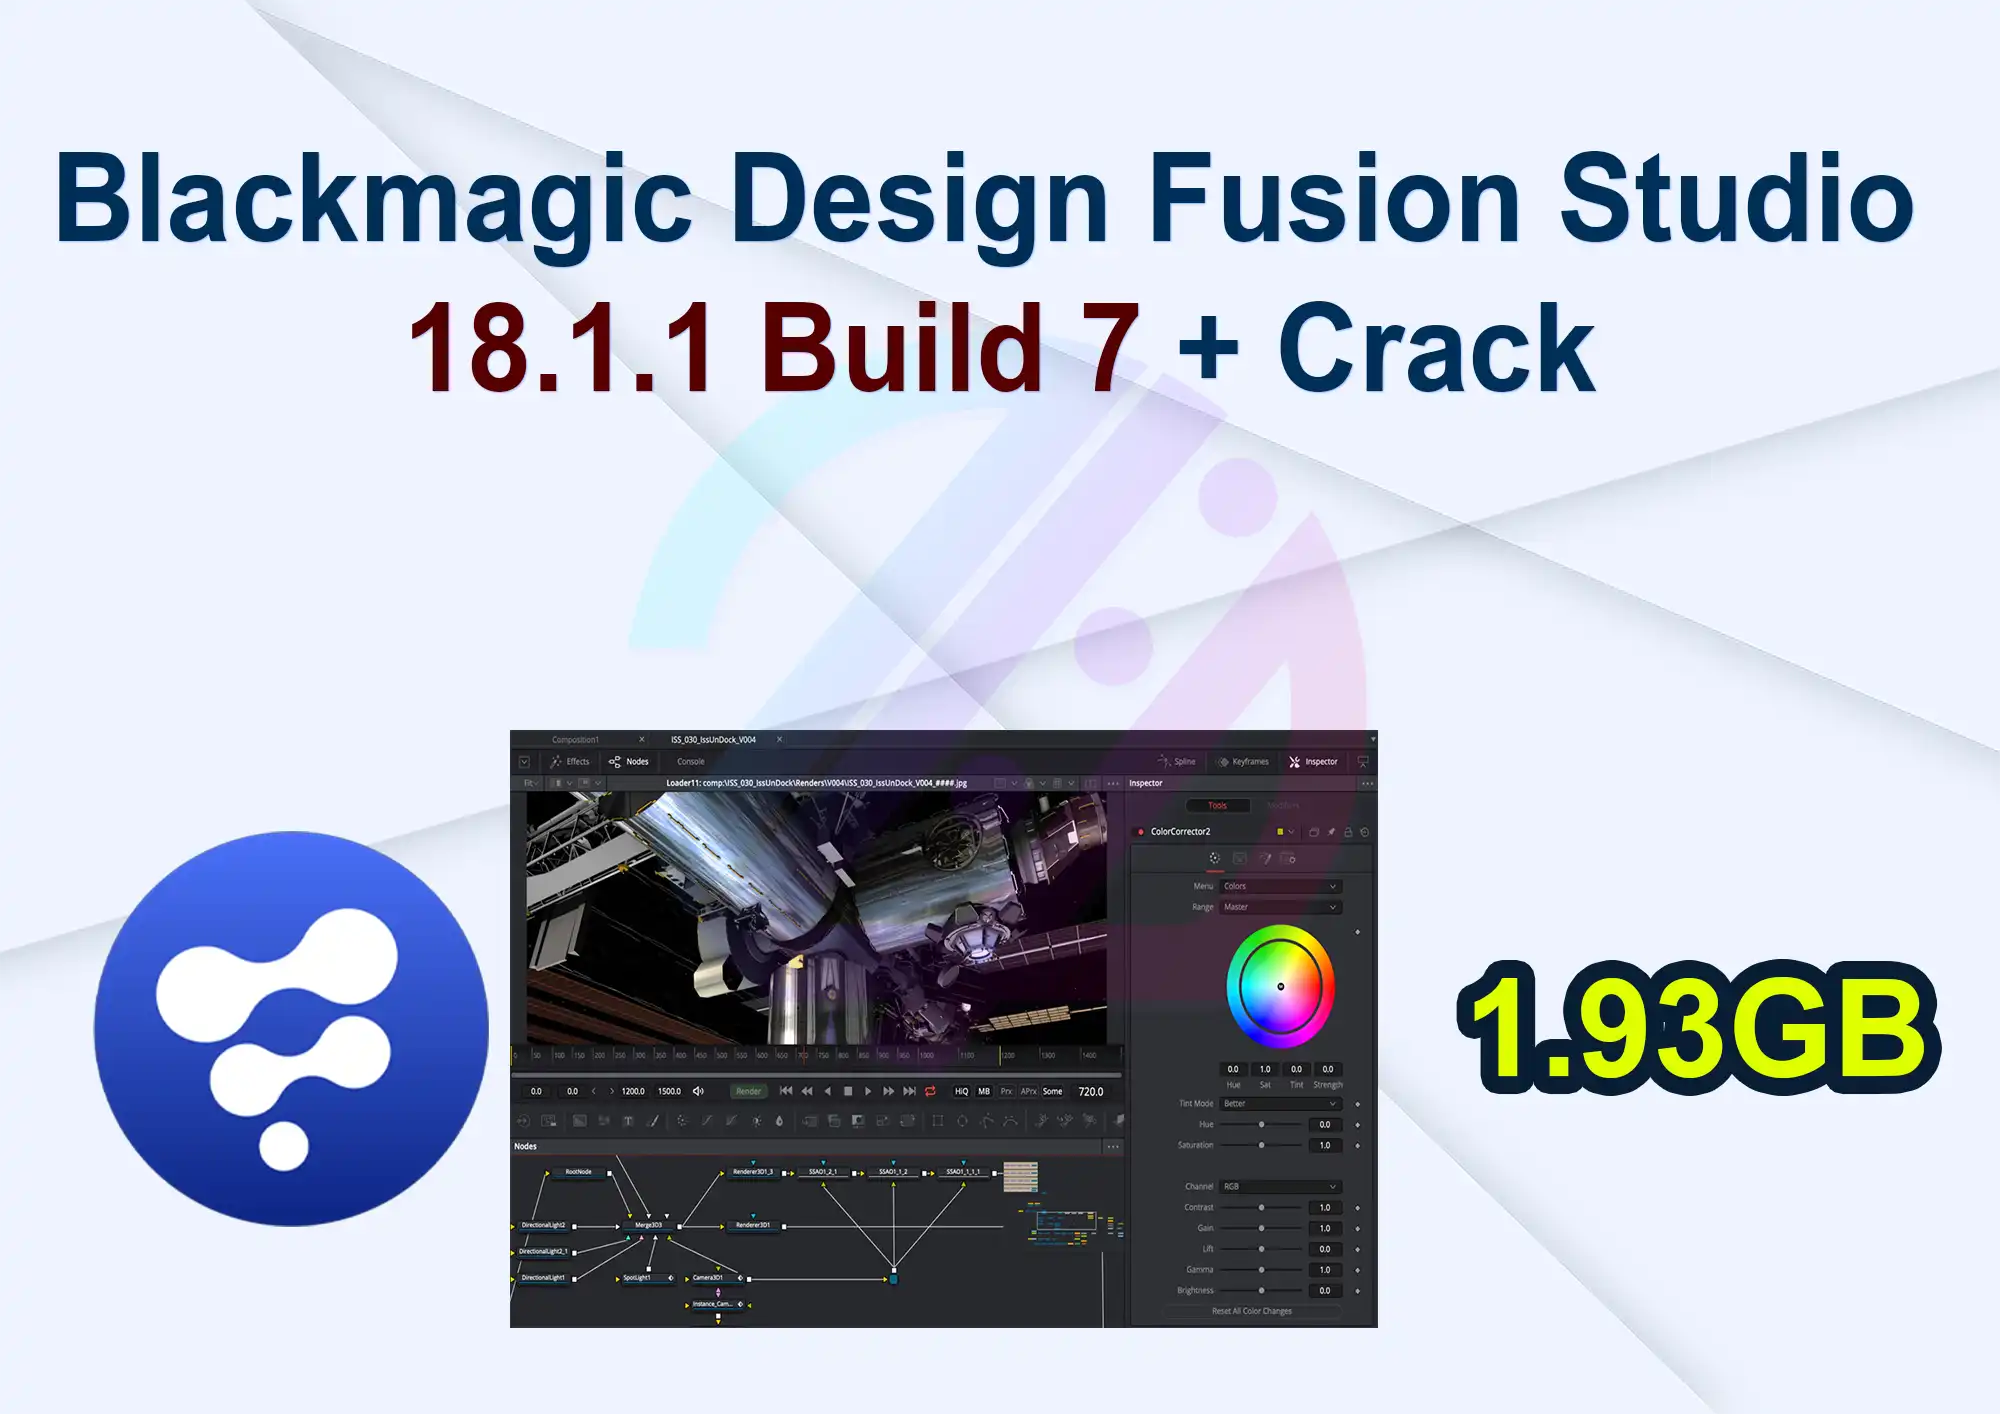 Blackmagic Design Fusion Studio 18.1.1 Build 7 + Crack